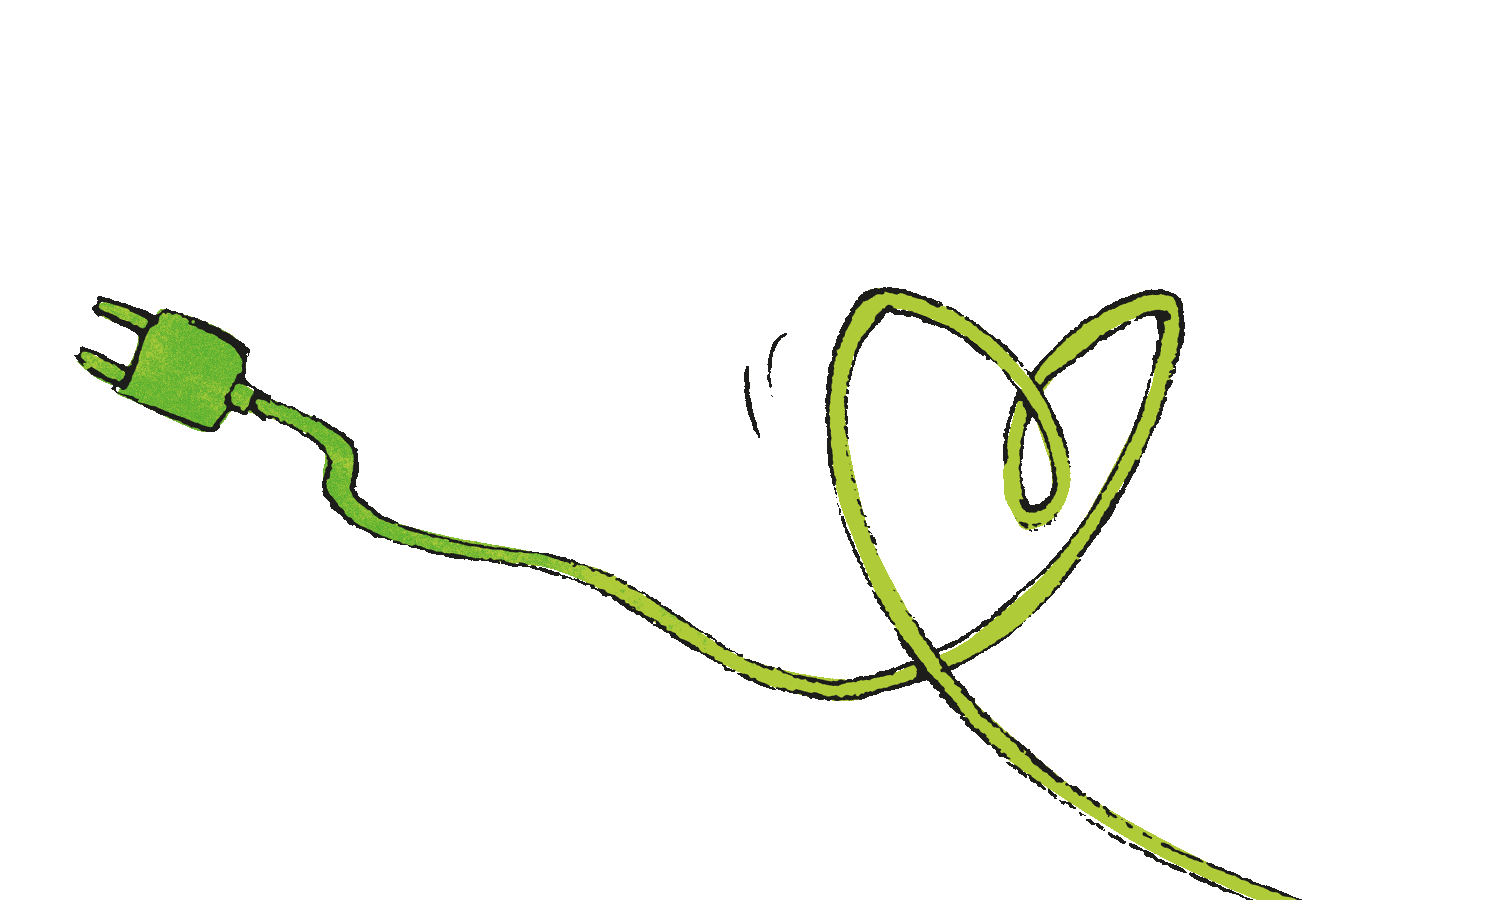 Illustration, grünes Stromkabel mit Stecker, Kabel formt ein Herz